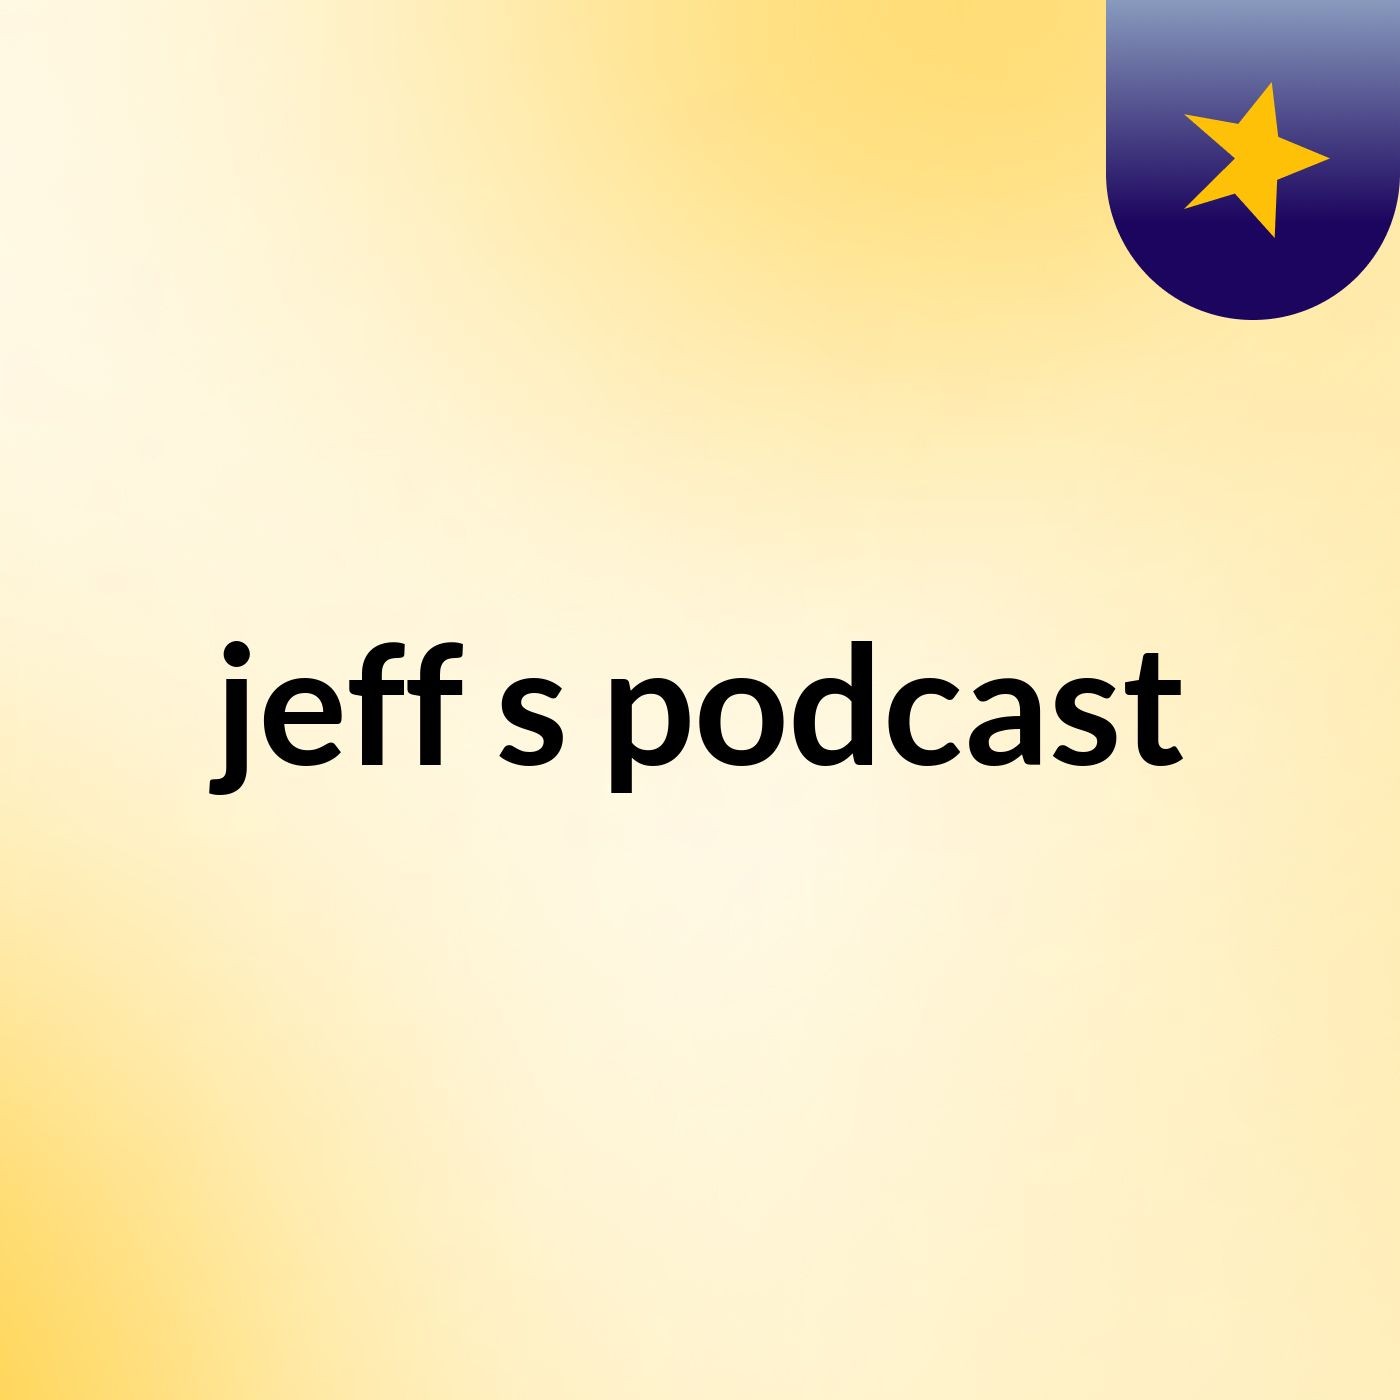 jeff's podcast